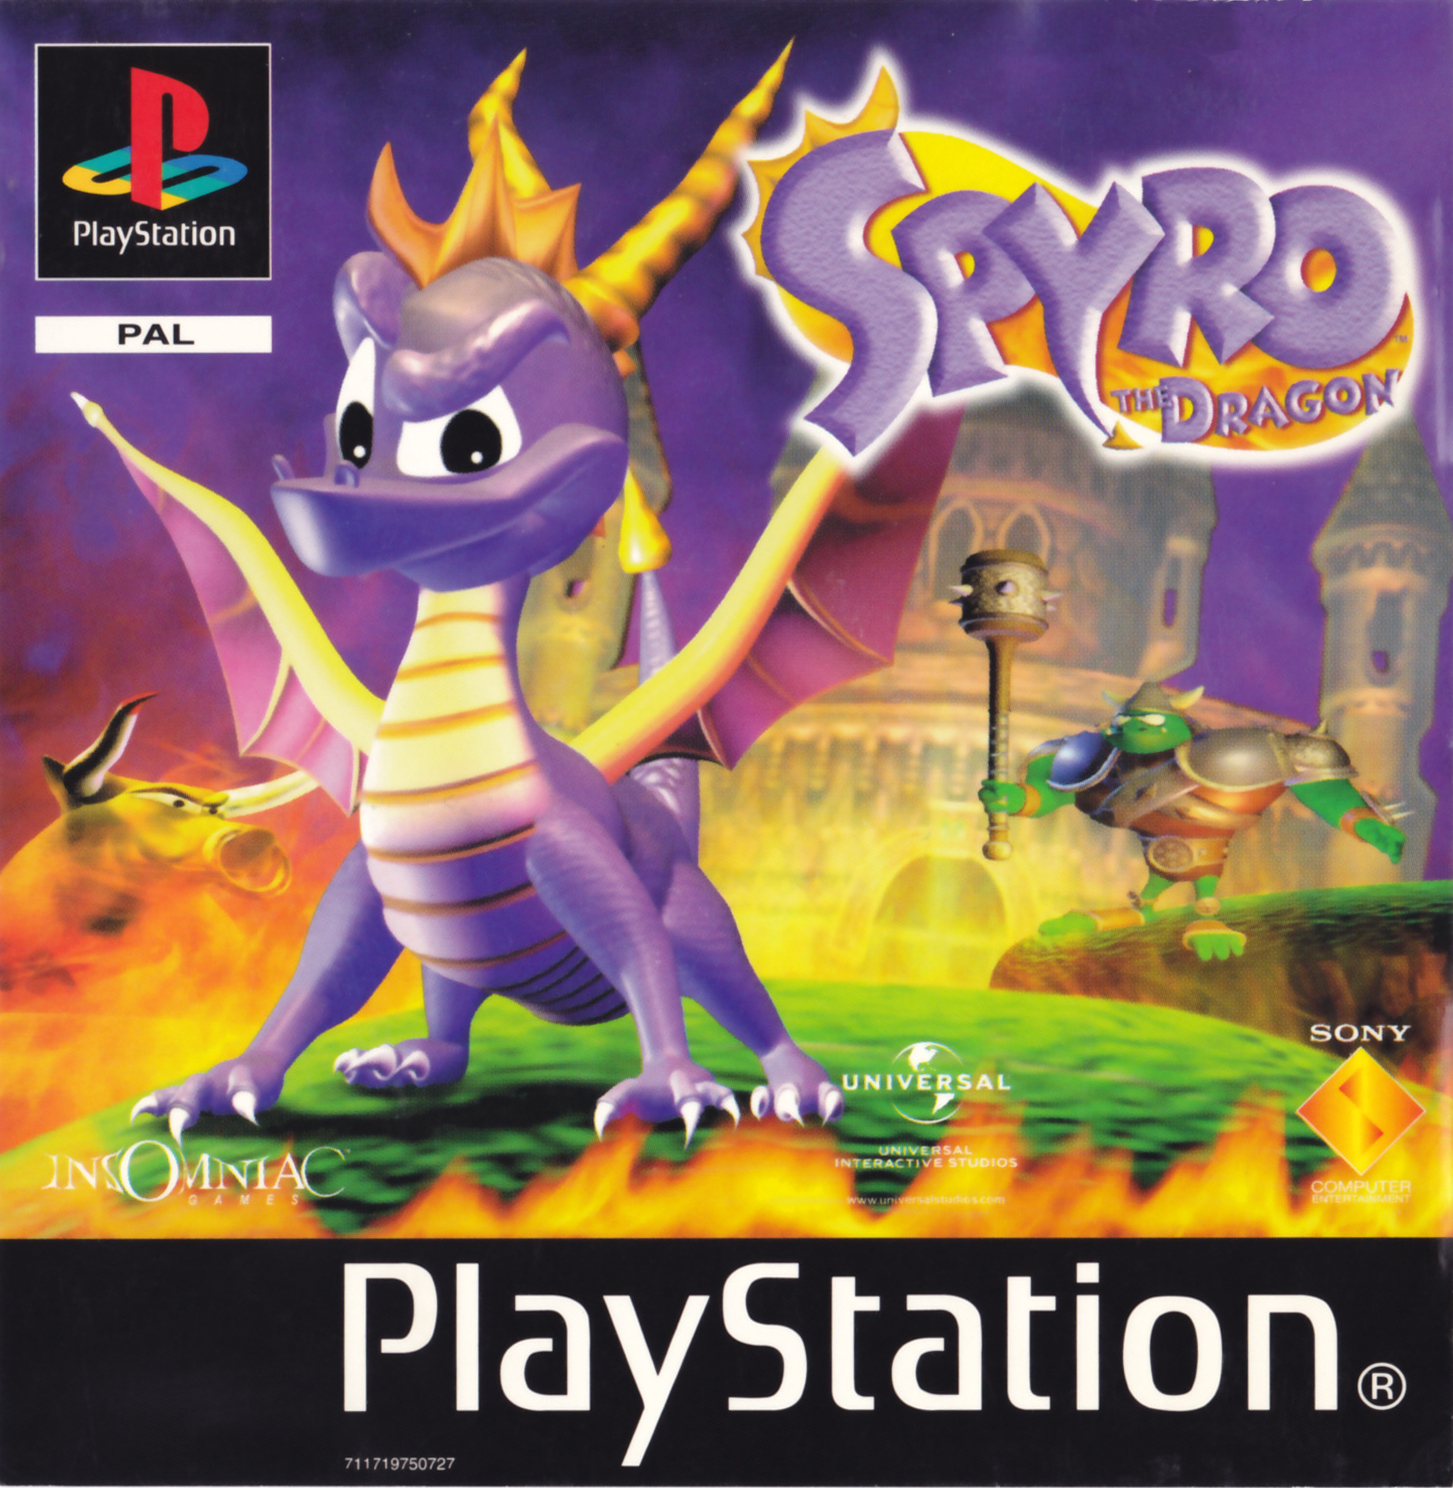 spyro the dragon game